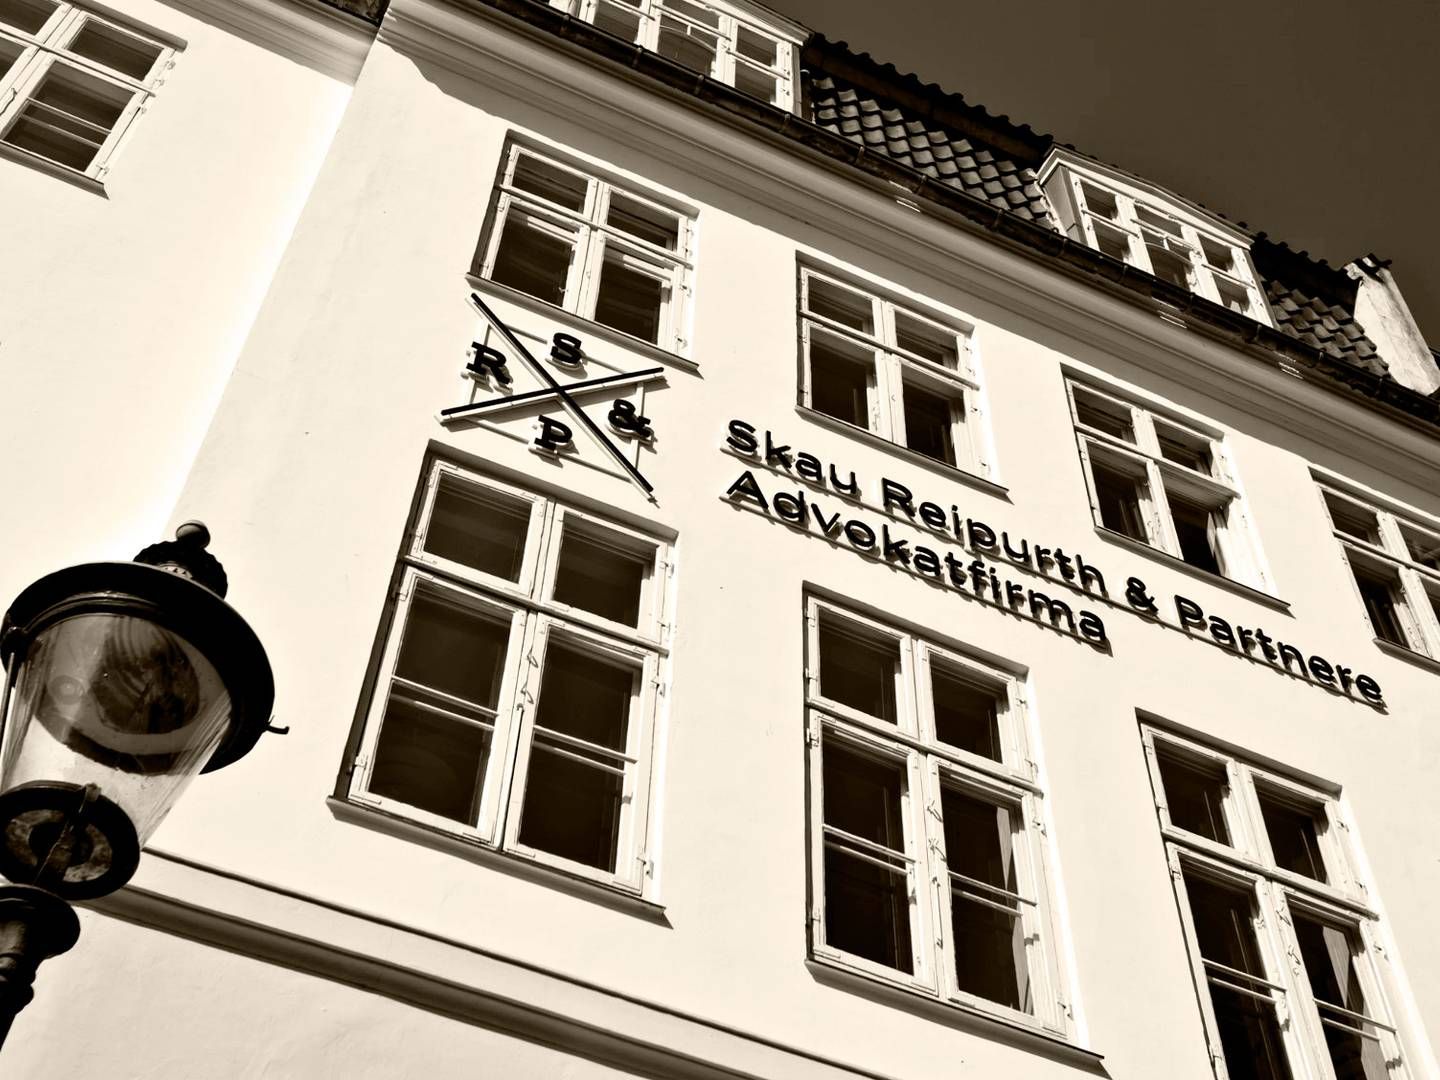 Omsætningen lød sidste år på godt 90 mio. kr. hos advokatfirmaet Skau Reipurth & Partnere, der holder til på Amaliegade i centrum af København | Foto: Liselotte Plenov / Fotorummet